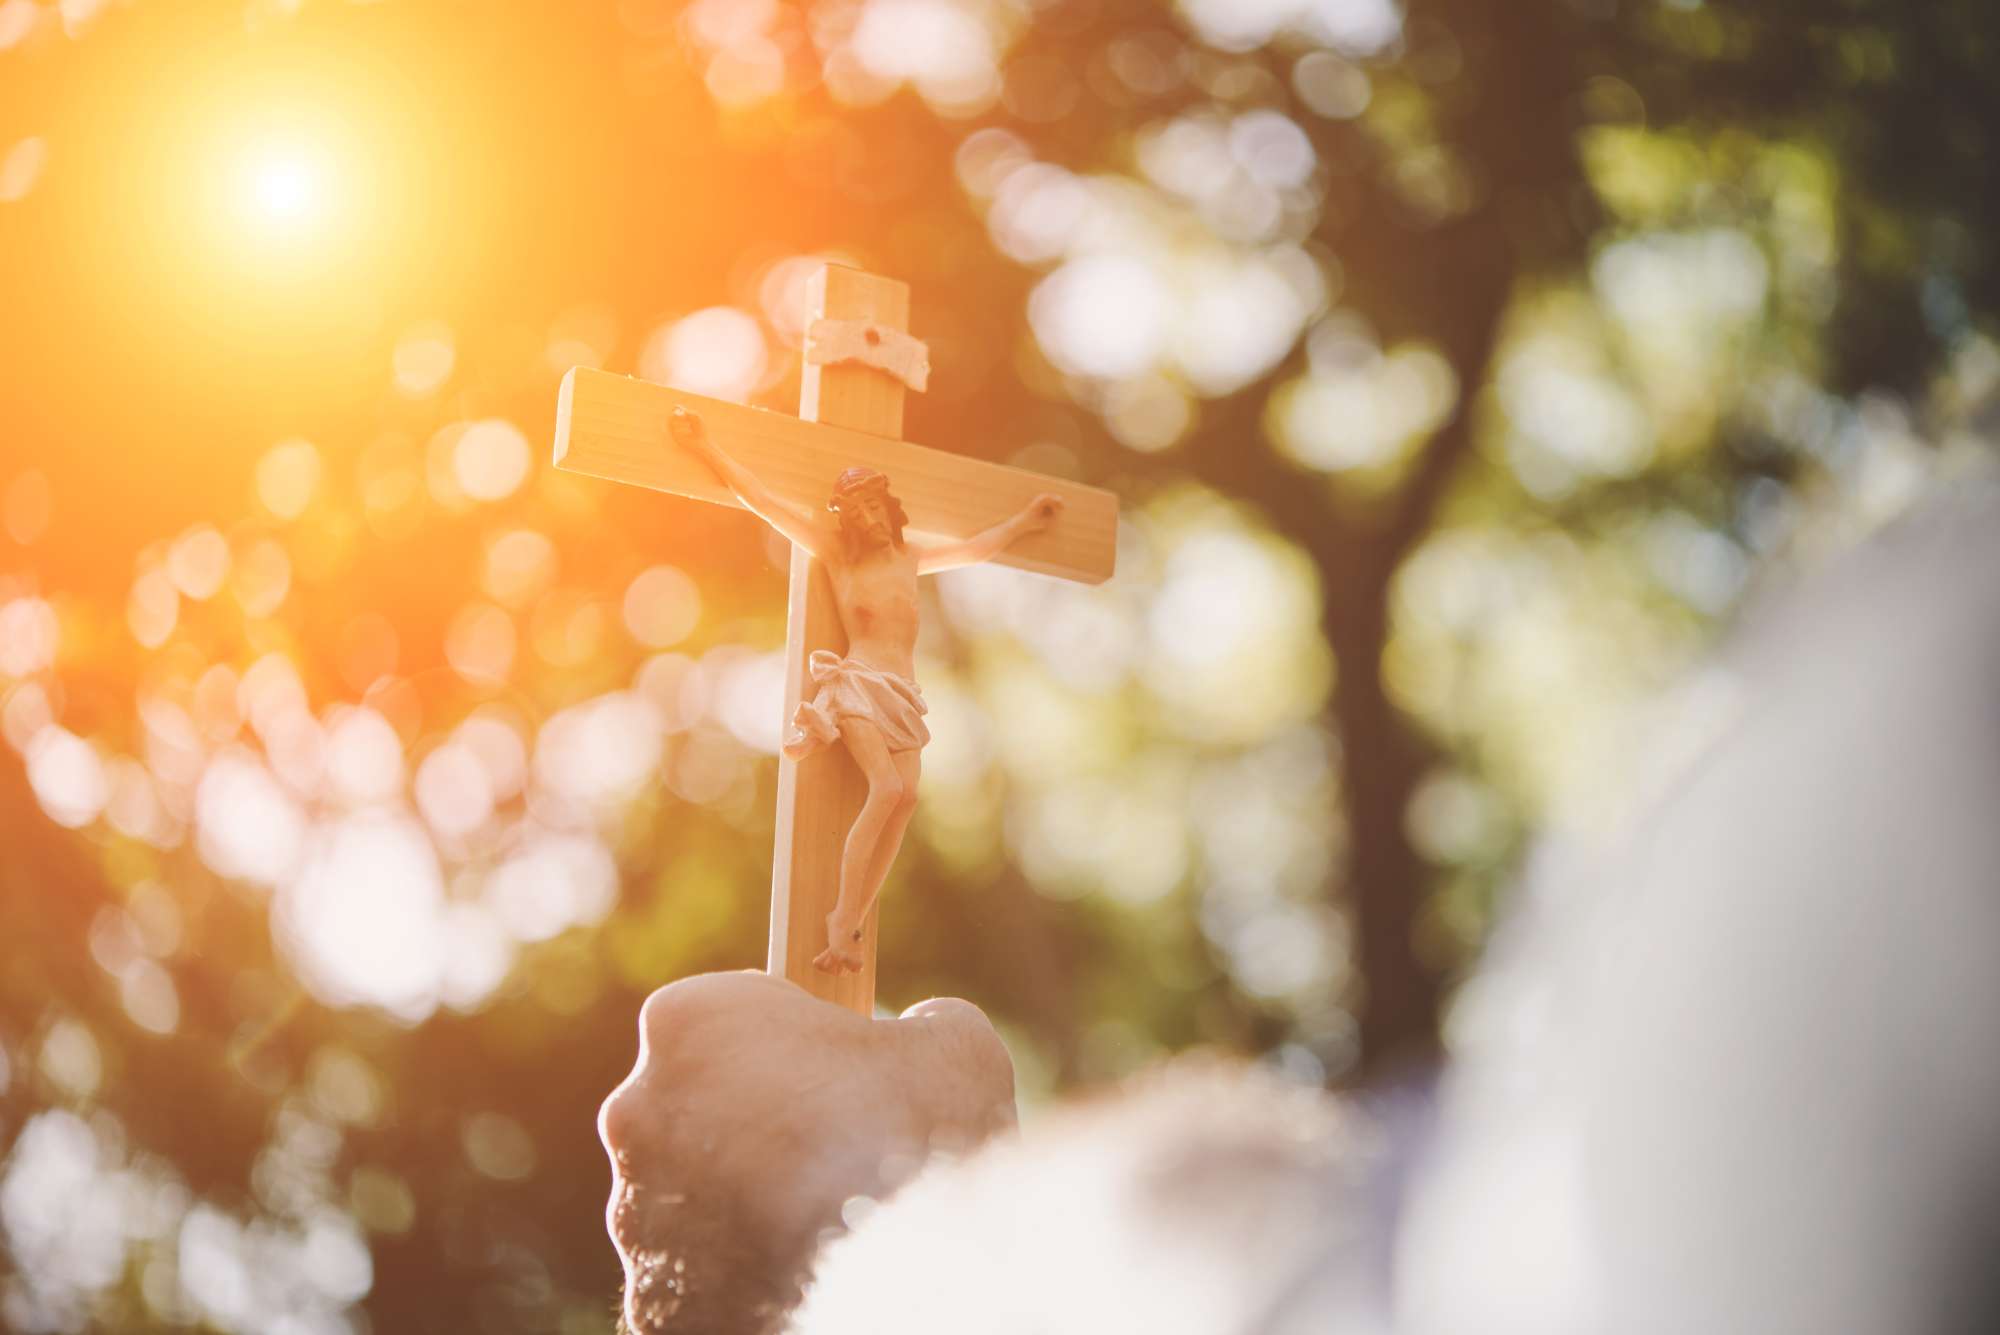 Semana Santa: una invitación a redescubrir nuestra esencia humana a la luz de la Pascua